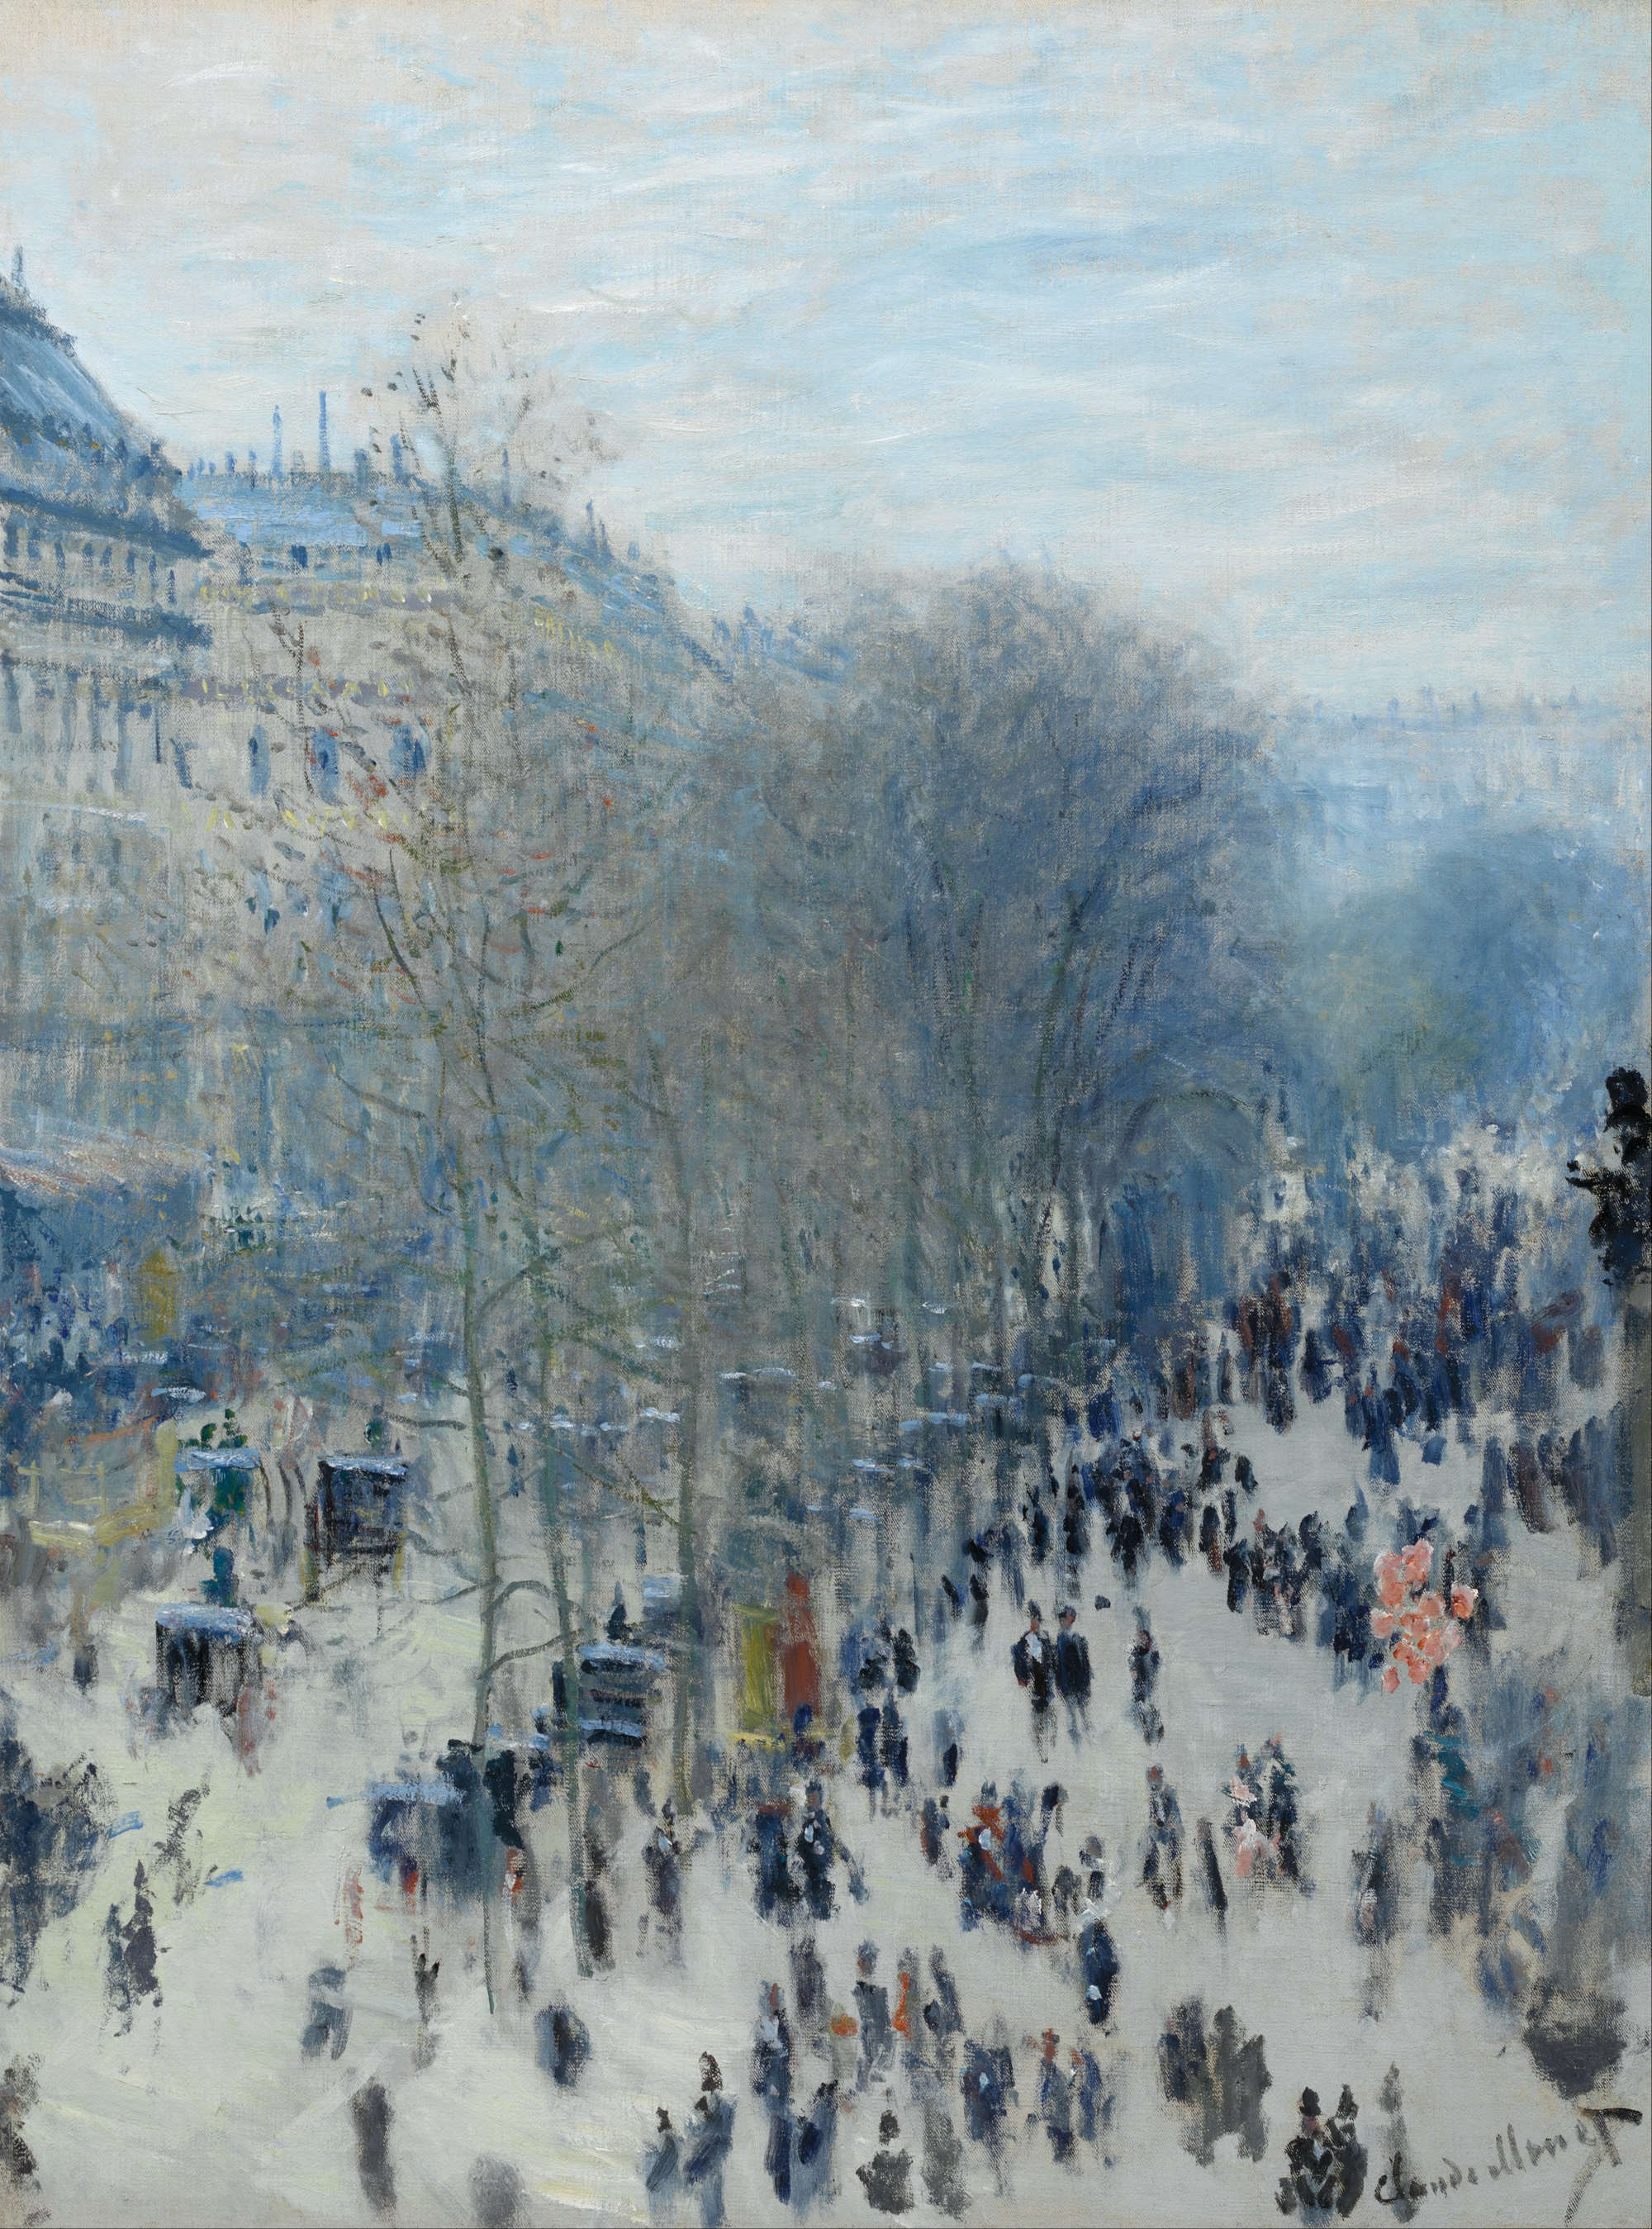 Claude Monet, Boulevard des Capucines (1873-1874; oil on canvas, 80.3 x 60.3 cm; Kansas City, Nelson Atkins Museum of Art)